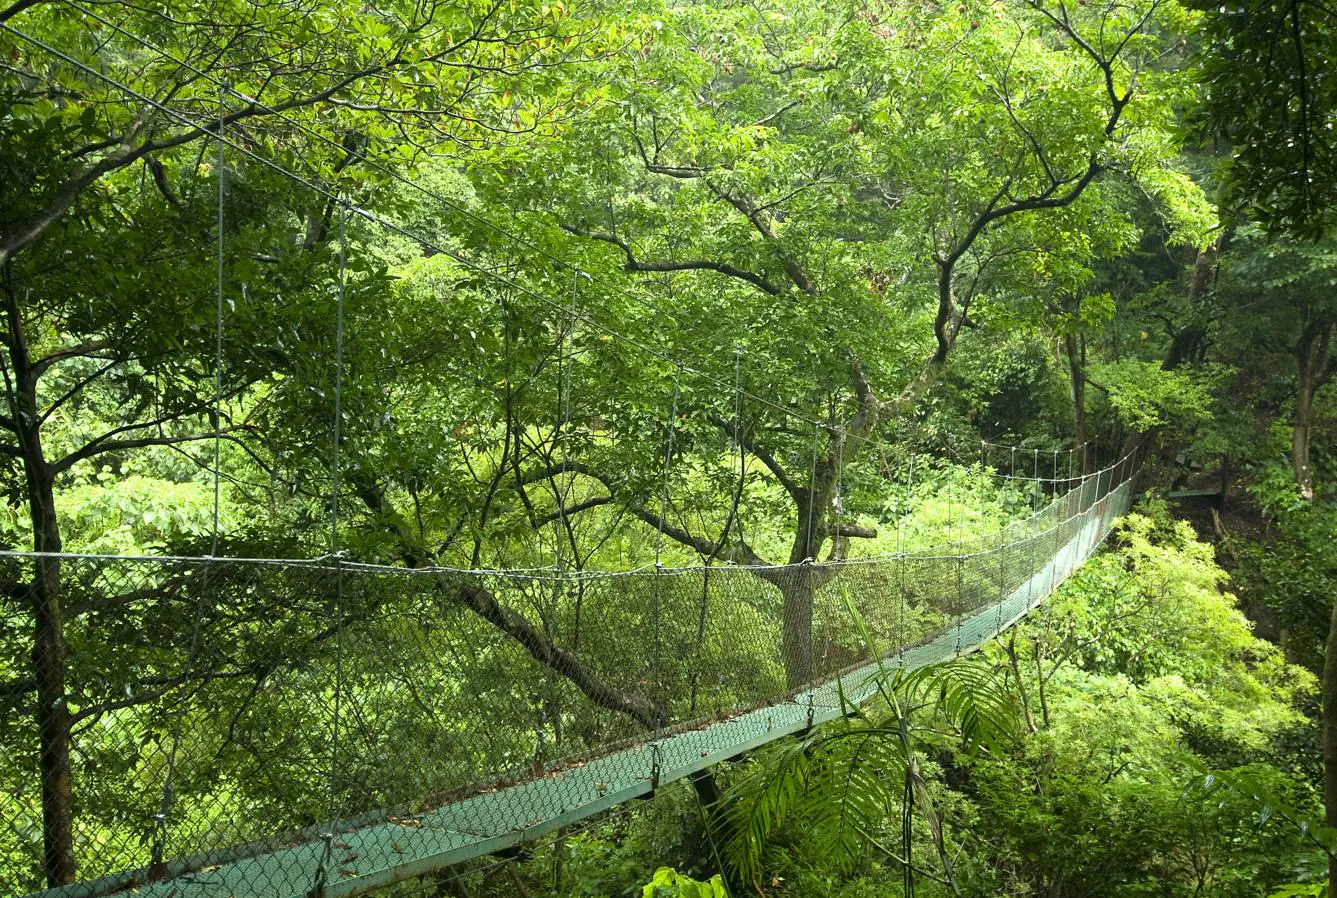 Pasión por los puentes colgantes. En los años 70, el Instituto Smithsoniano revolucionó la biología tropical en Costa Rica, al descubrir que la mayoría de la actividad biótica en los bosques se concentra en la zona superior. Desde entonces, se han construido decenas de puentes colgantes para contemplar muy de cerca los diferentes tipos de bosque, una naturaleza desbordante (Costa Rica tiene el 5 por ciento de la biodiversidad mundial) que atrae a miles de turistas.